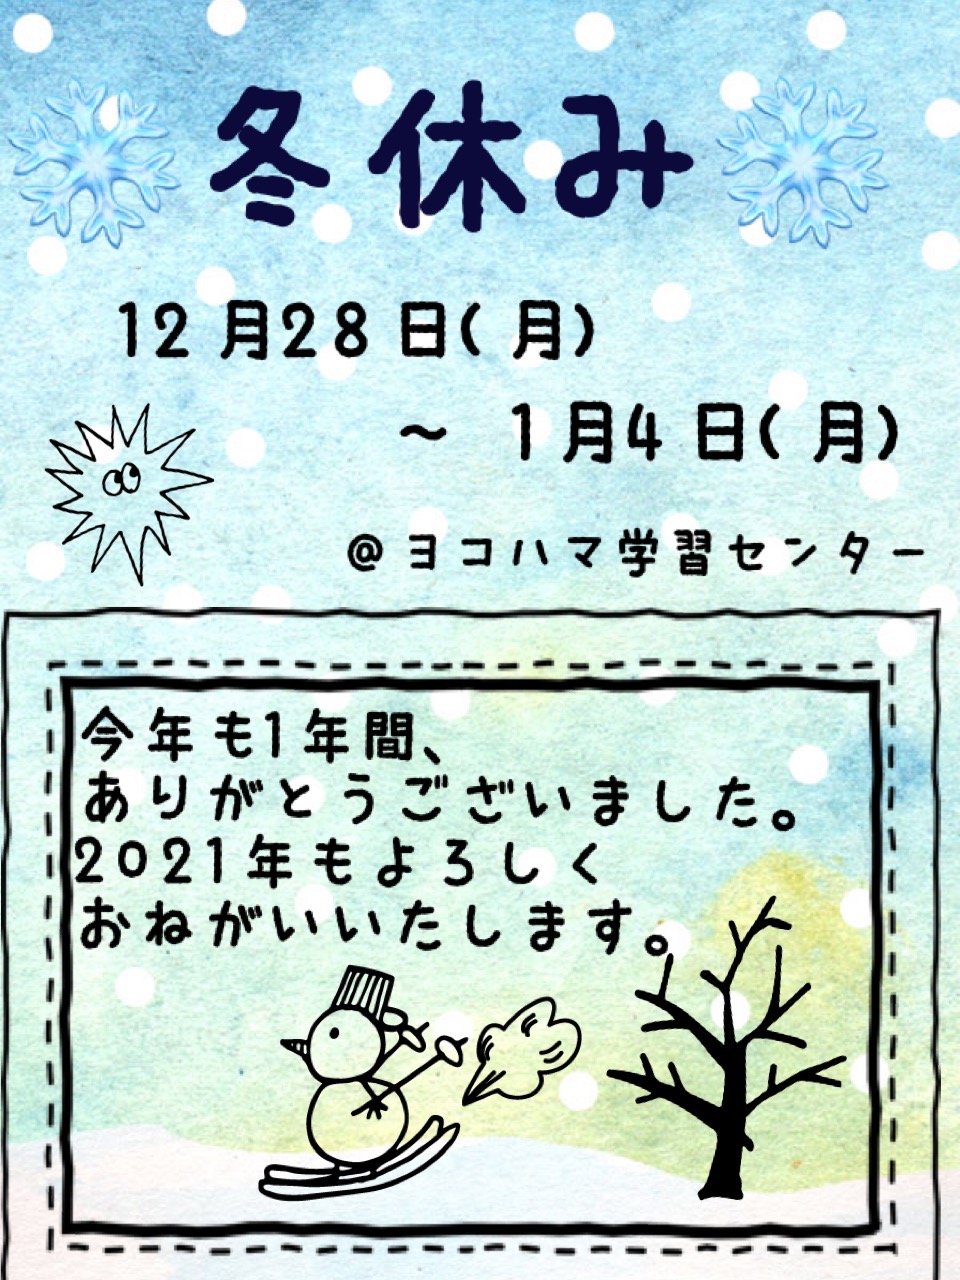 【横浜】冬期休暇のお知らせ・１２月２８日～１月４日